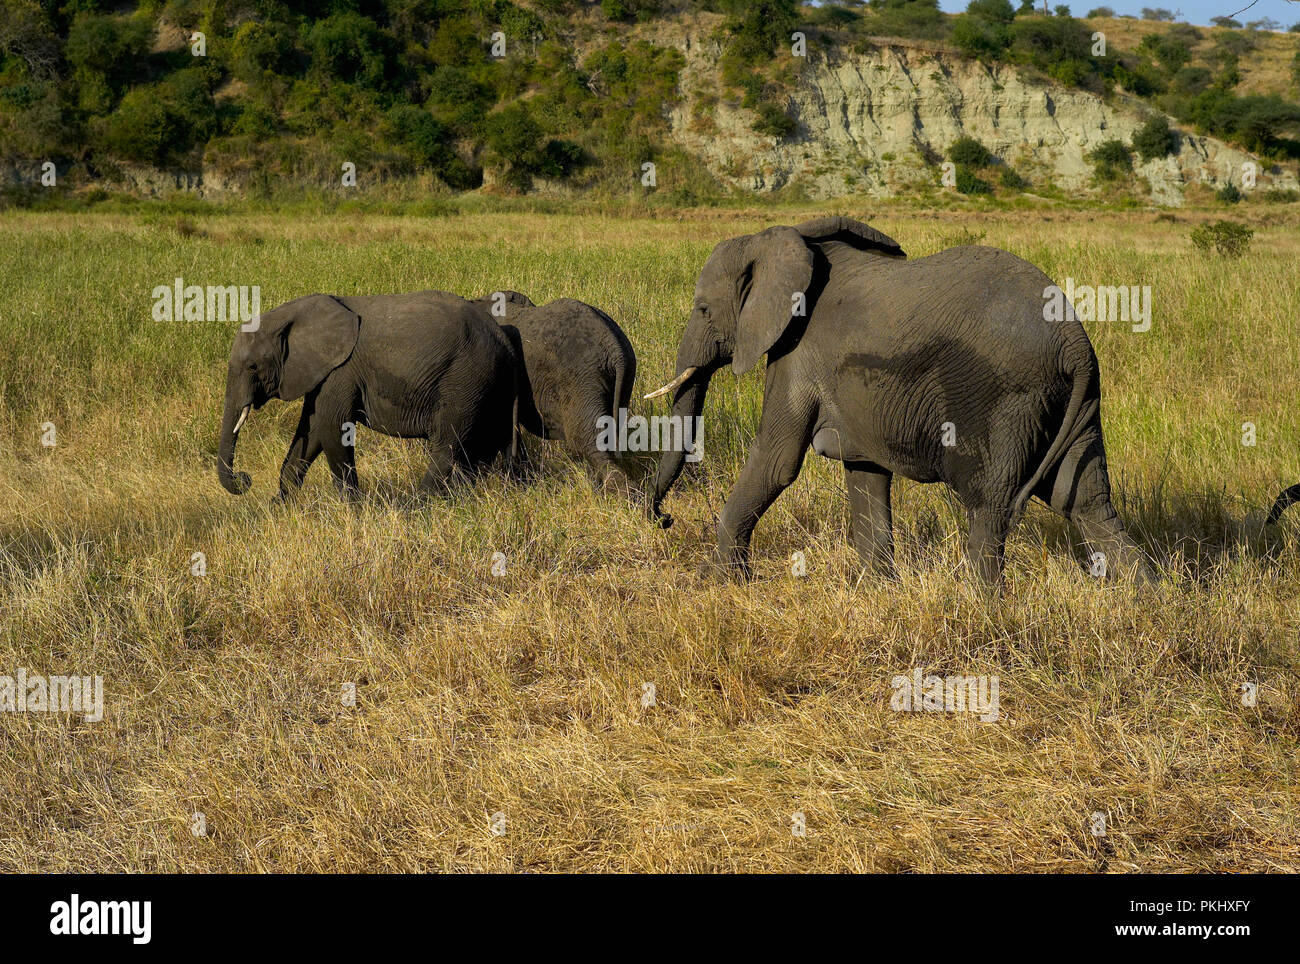 Three Elephants in Tarangire National Park, Tanzania, Africa Stock Photo